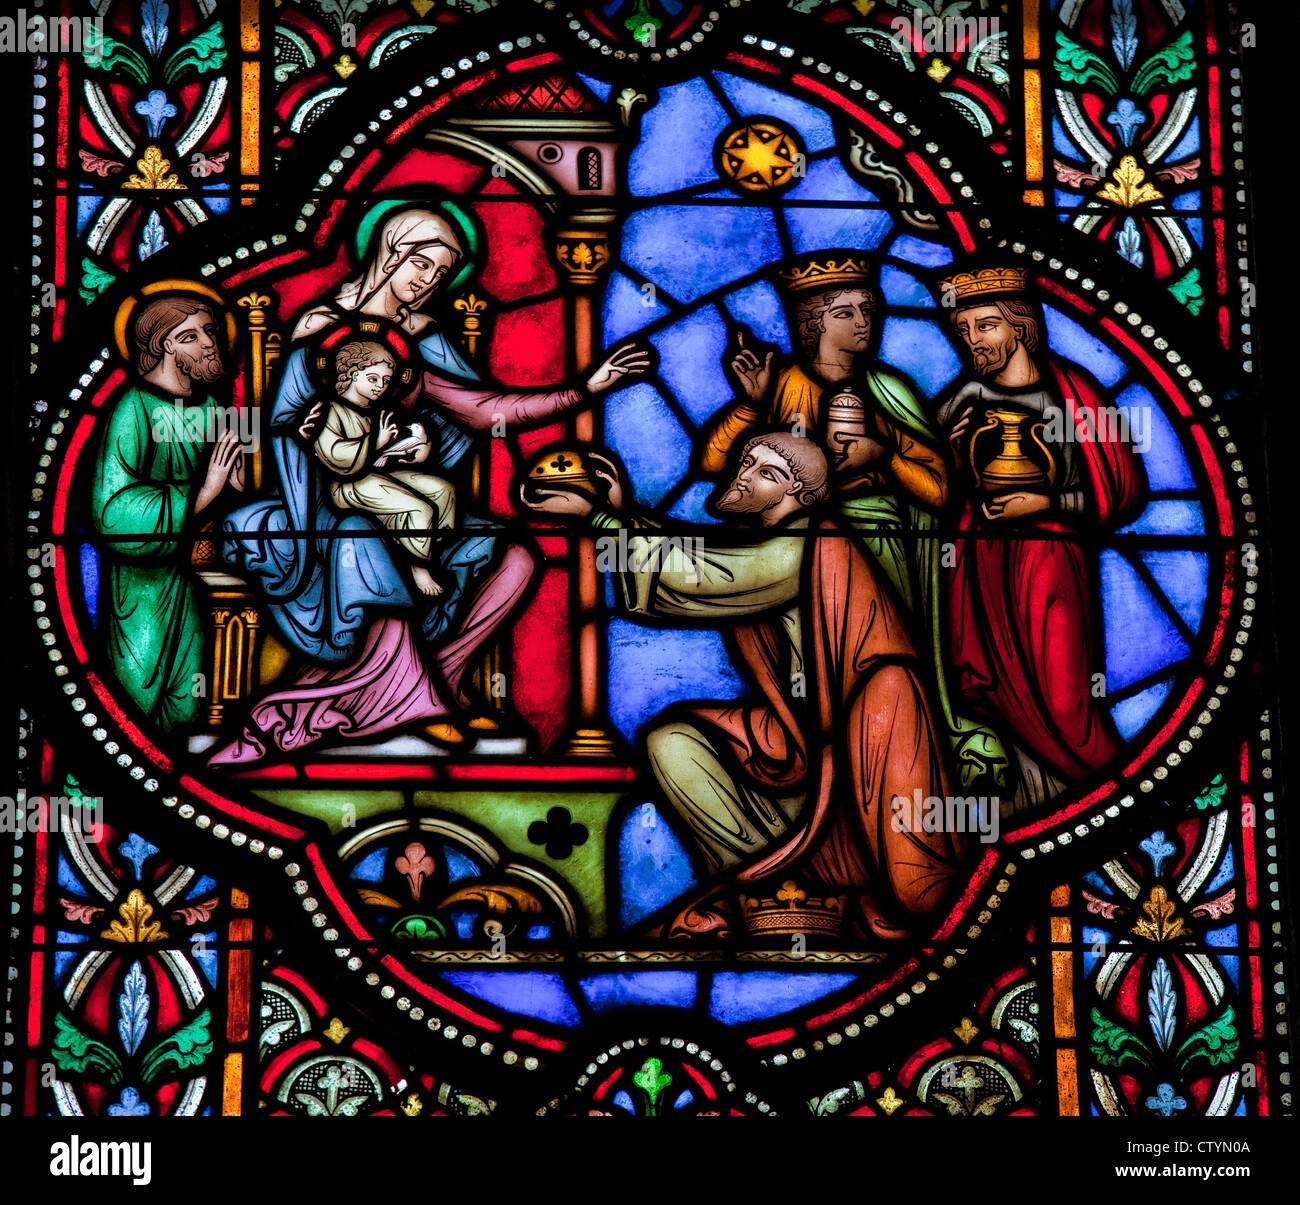 Drei Könige aus dem Osten besuchen der Heiligen Familie in Bethlehem. Dieses Fenster wurde 1866 gegründet, keine Property-Release ist erforderlich. Stockfoto